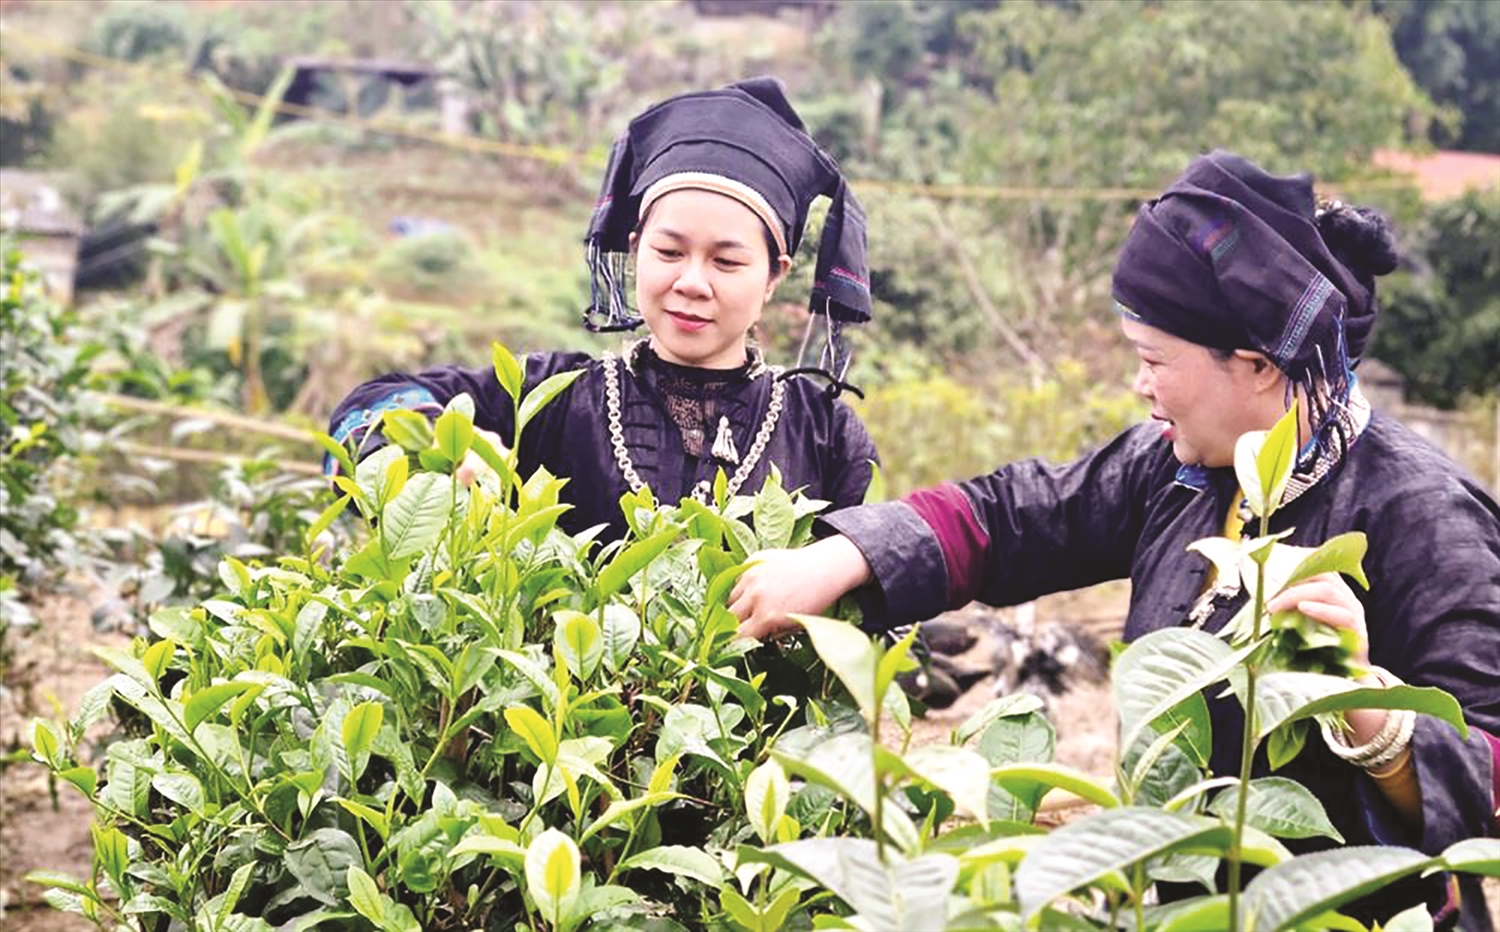 Cây chè đang được coi là cây trồng chủ lực góp phần nâng cao thu nhập cho Nhân dân trên địa bàn huyện vùng cao Mường Khương, tỉnh Lào Cai